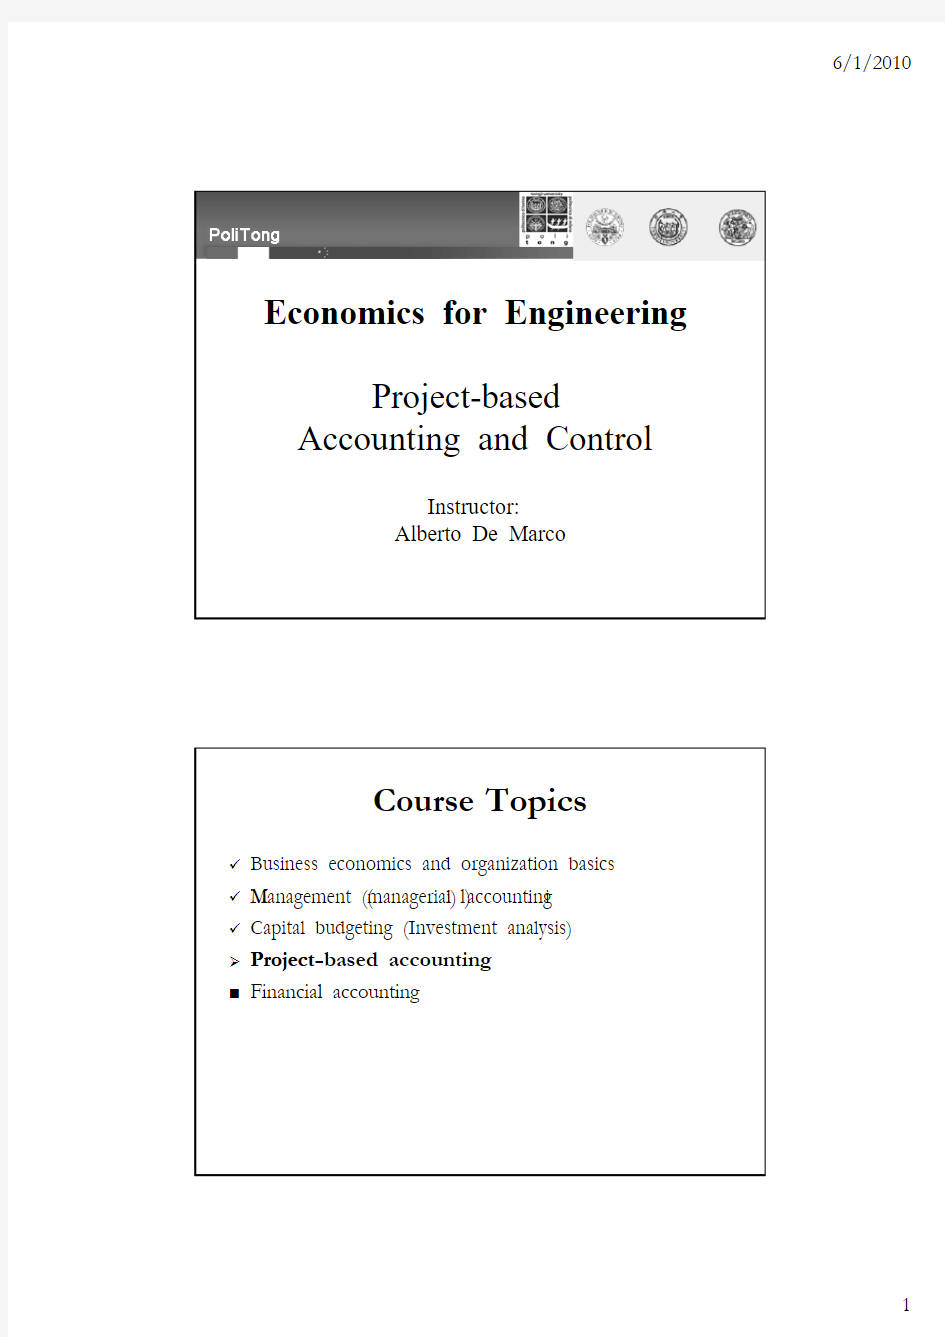 【都灵理工大学】工程经济学05-Econ_ProjectAcc&Control